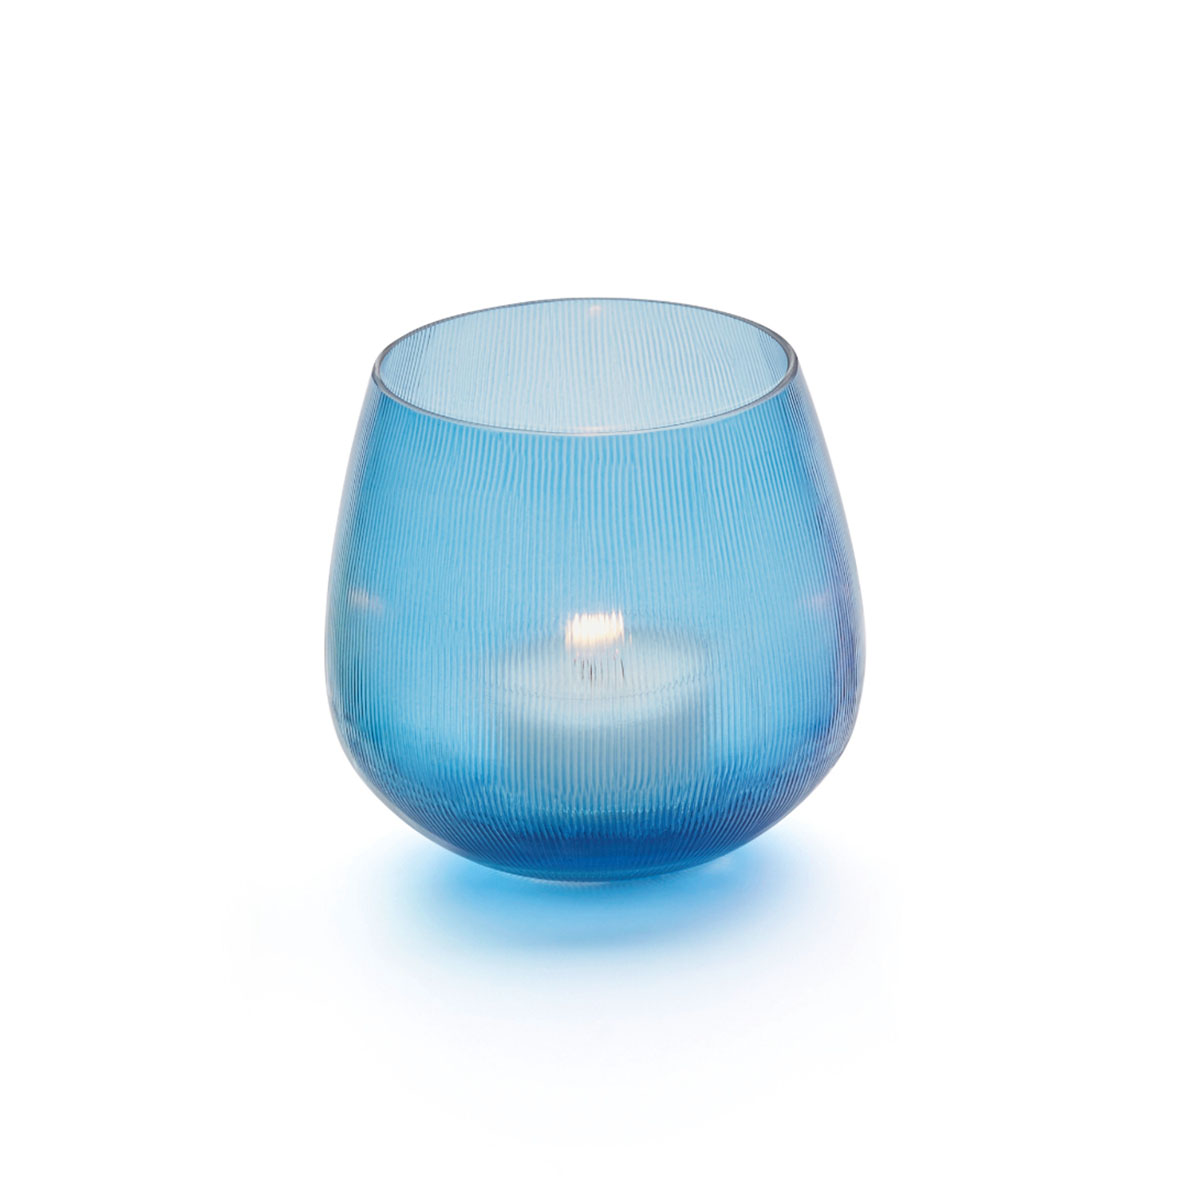 Capy Teelichthalter, handgeschliffen, royalblau, H: 8 cm